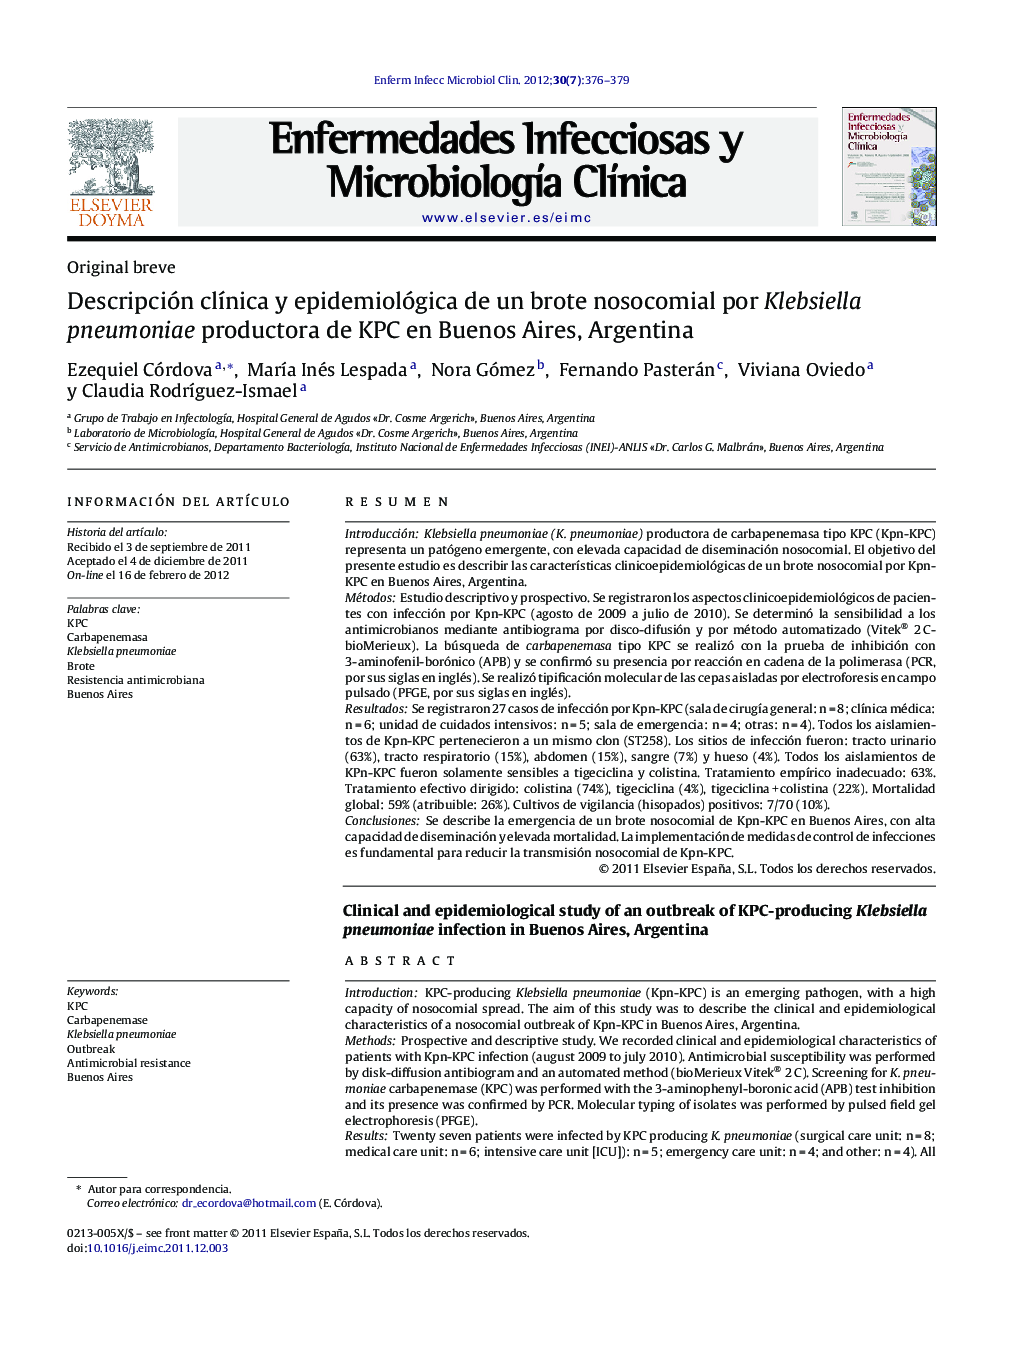 Descripción clínica y epidemiológica de un brote nosocomial por Klebsiella pneumoniae productora de KPC en Buenos Aires, Argentina